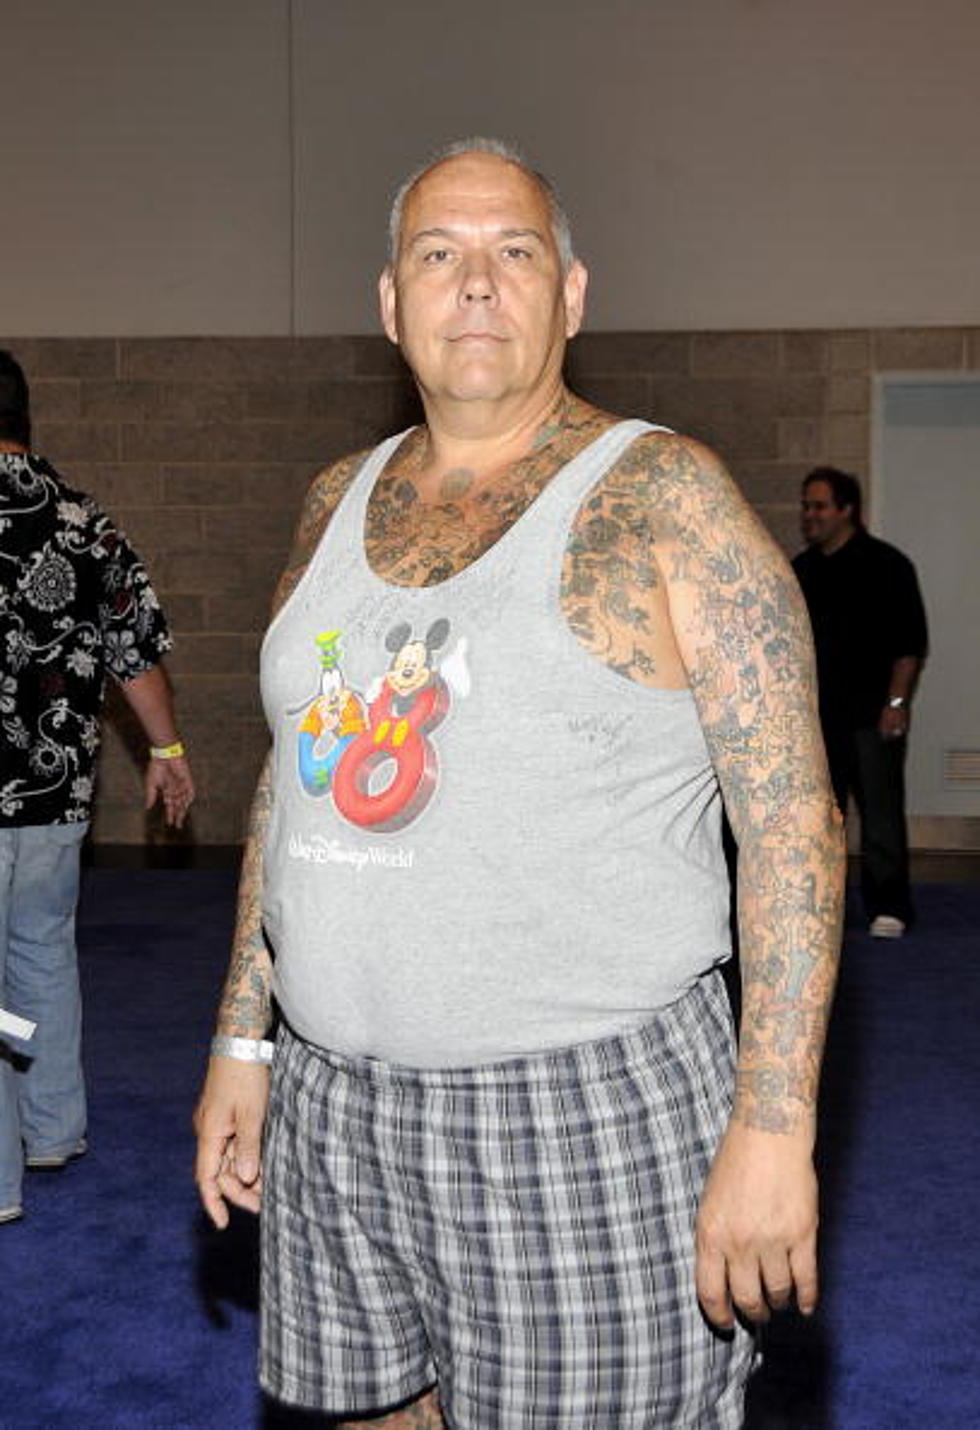 Disney Tattoo Guy Arrested